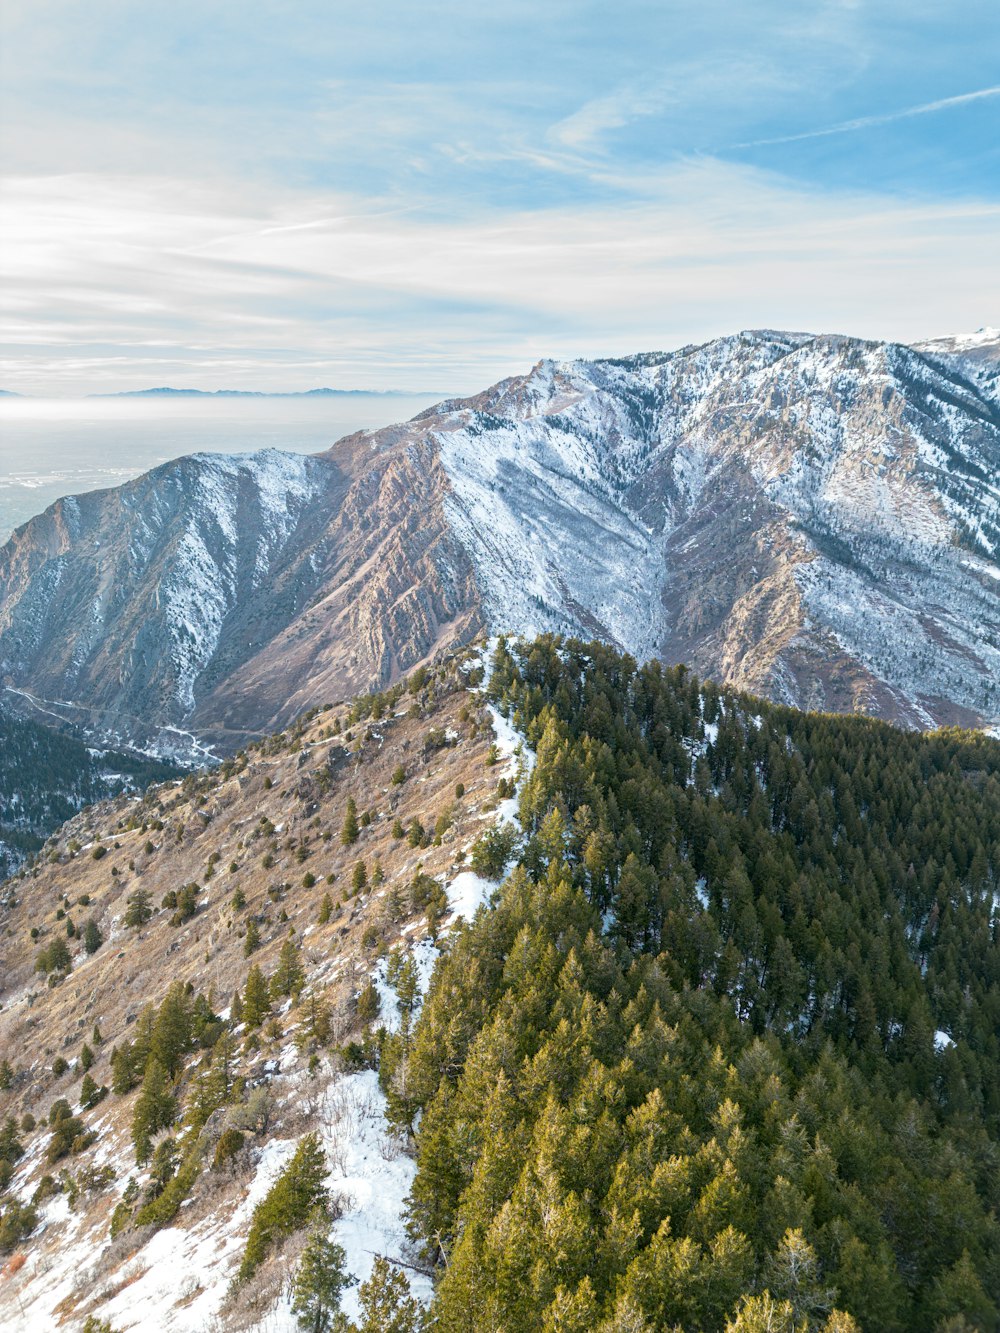 Una vista de una cadena montañosa con nieve